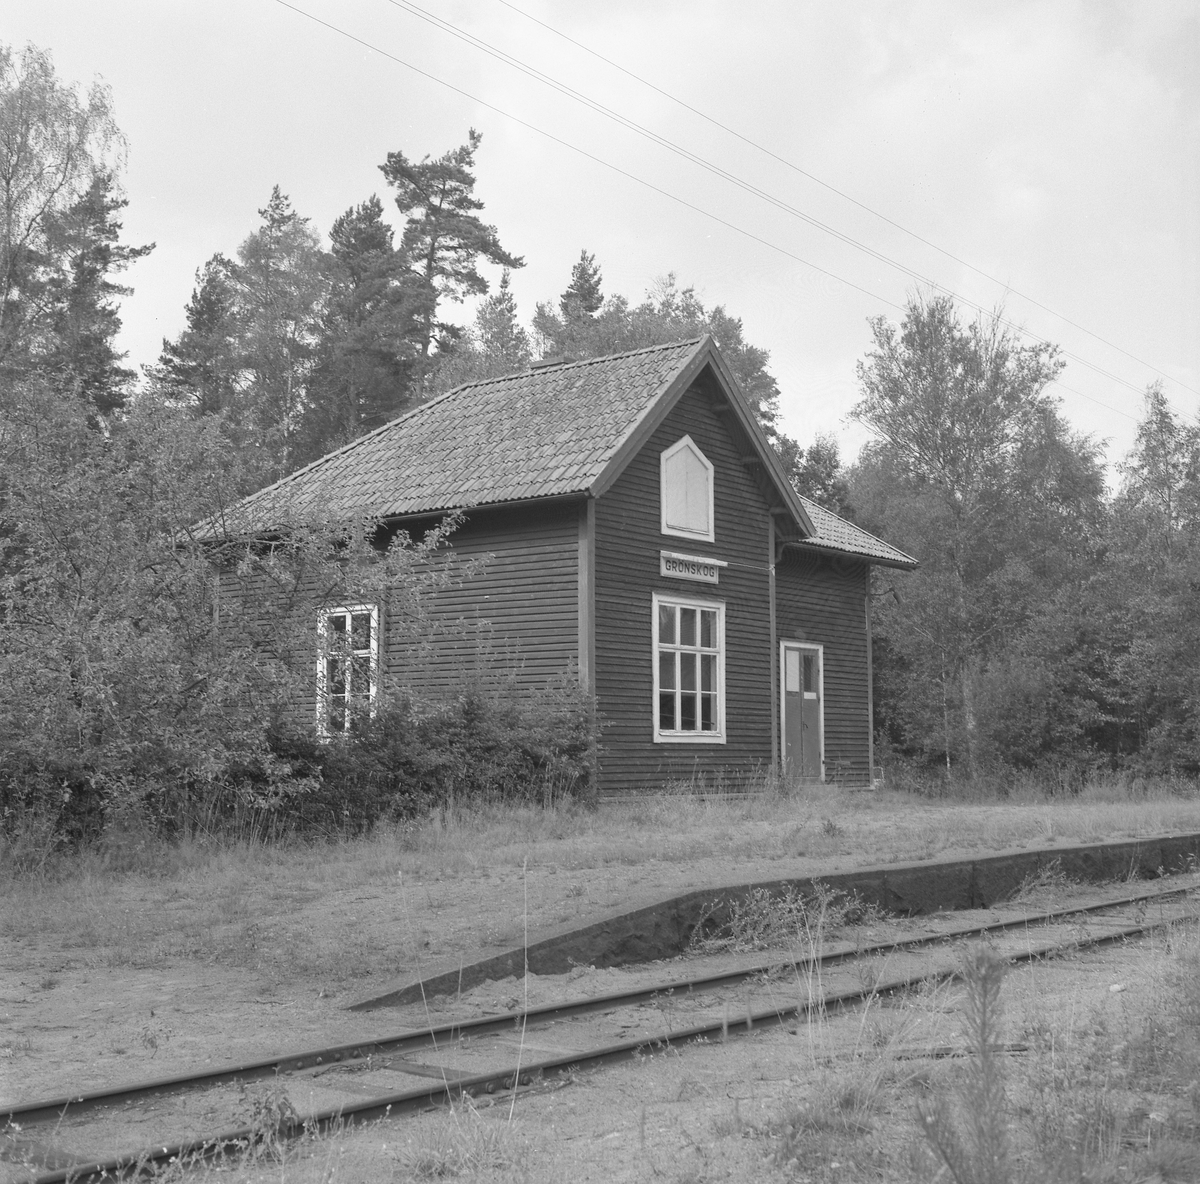 Hållplats anlagd 1905. Envånings stationshus i trä, byggt i vinkel